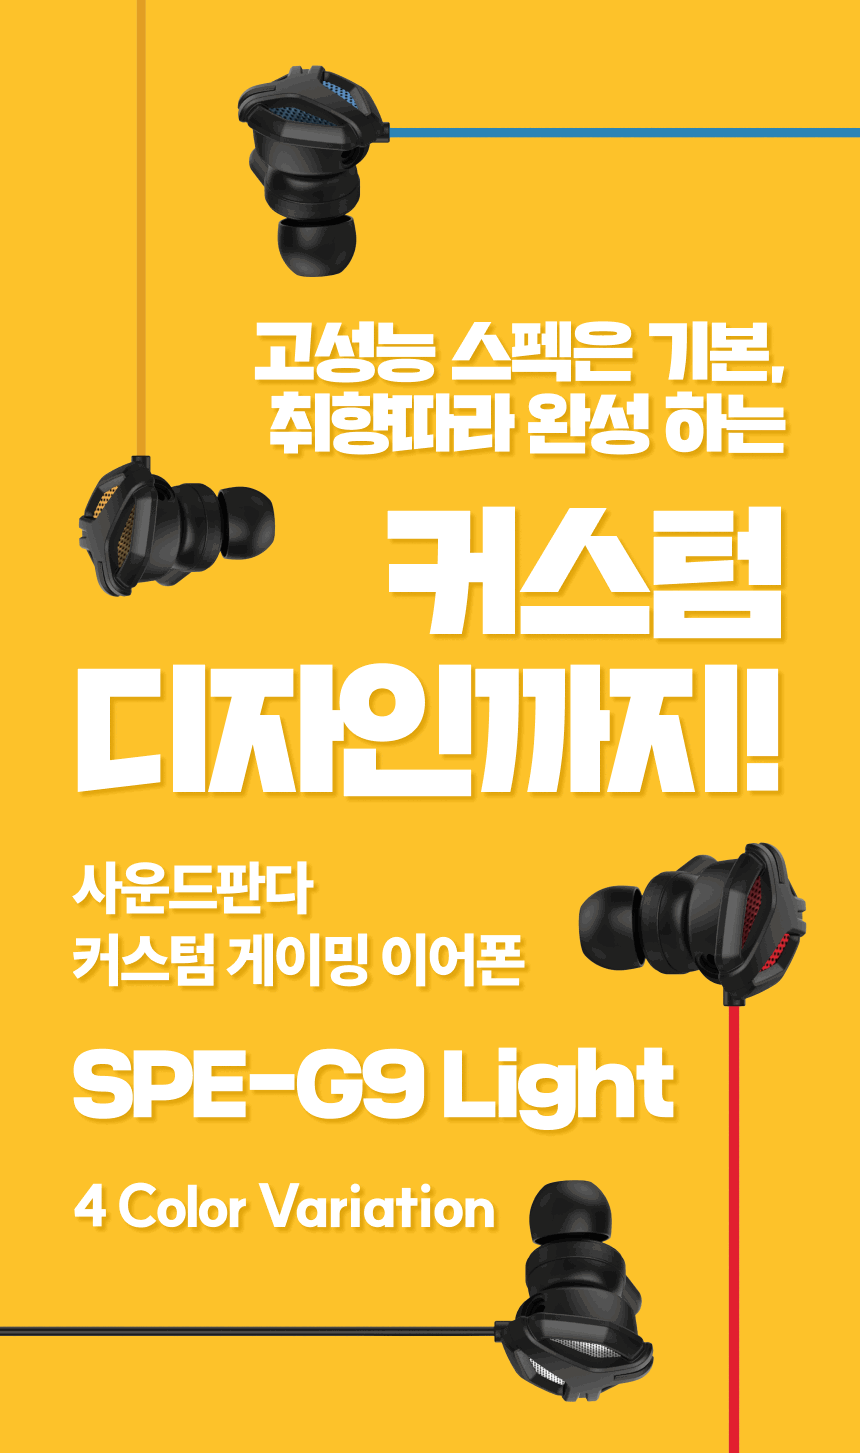 고성능 스펙은 기본, 취향에 따라 완성하는 커스텀 디자인까지! 사운드판다 커스텀 게이밍 이어폰 SPE-G9Light